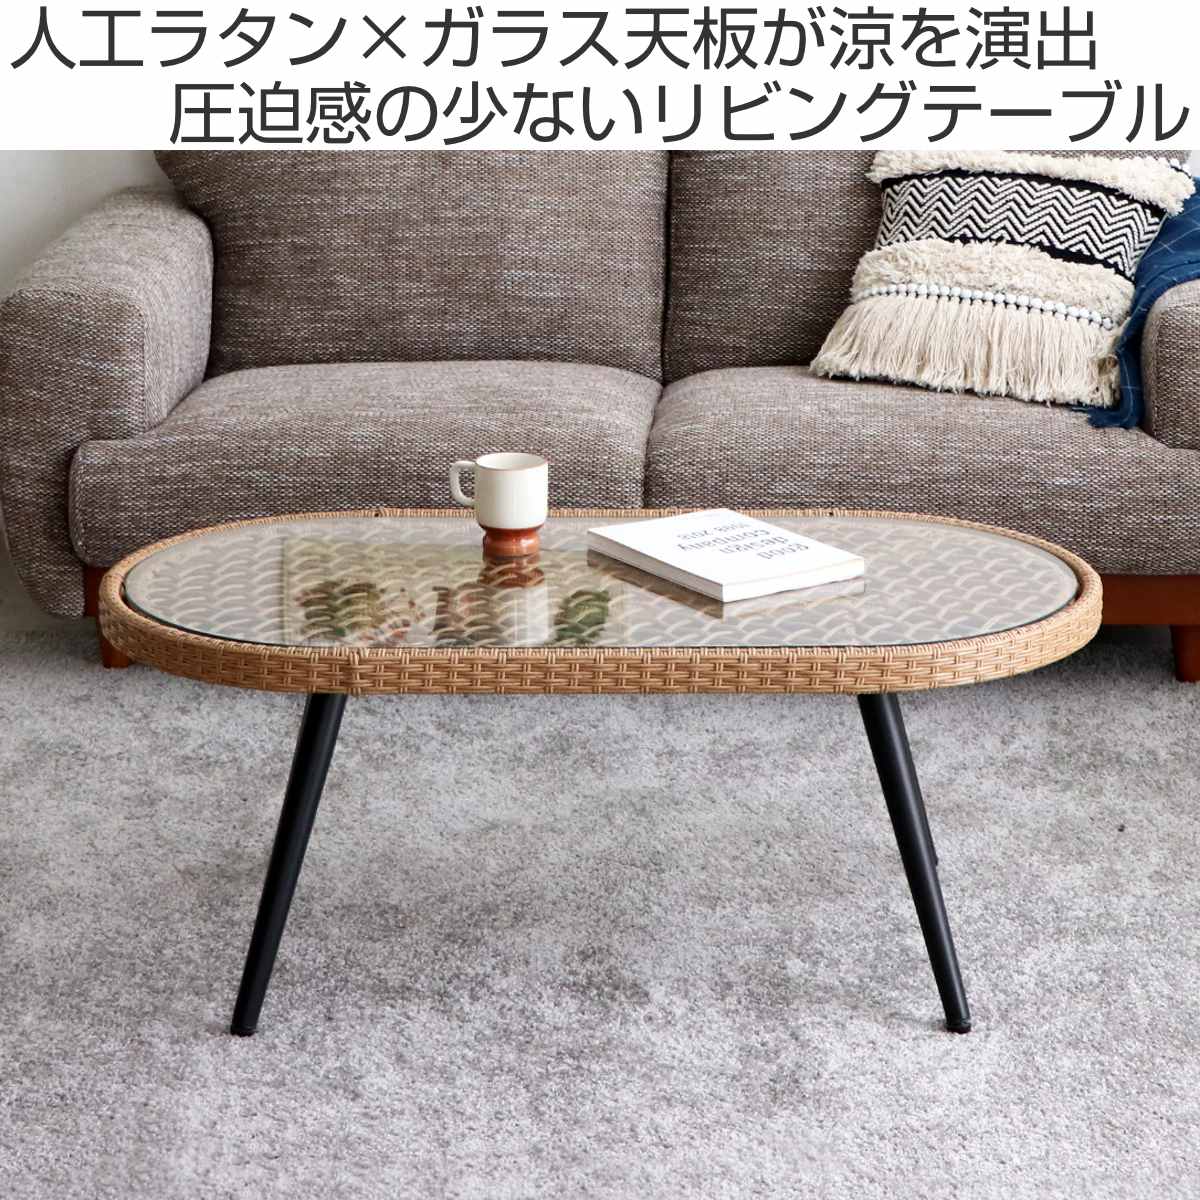 6,900円センターテーブル ラタン 木製 インテリア 昭和レトロ 座卓